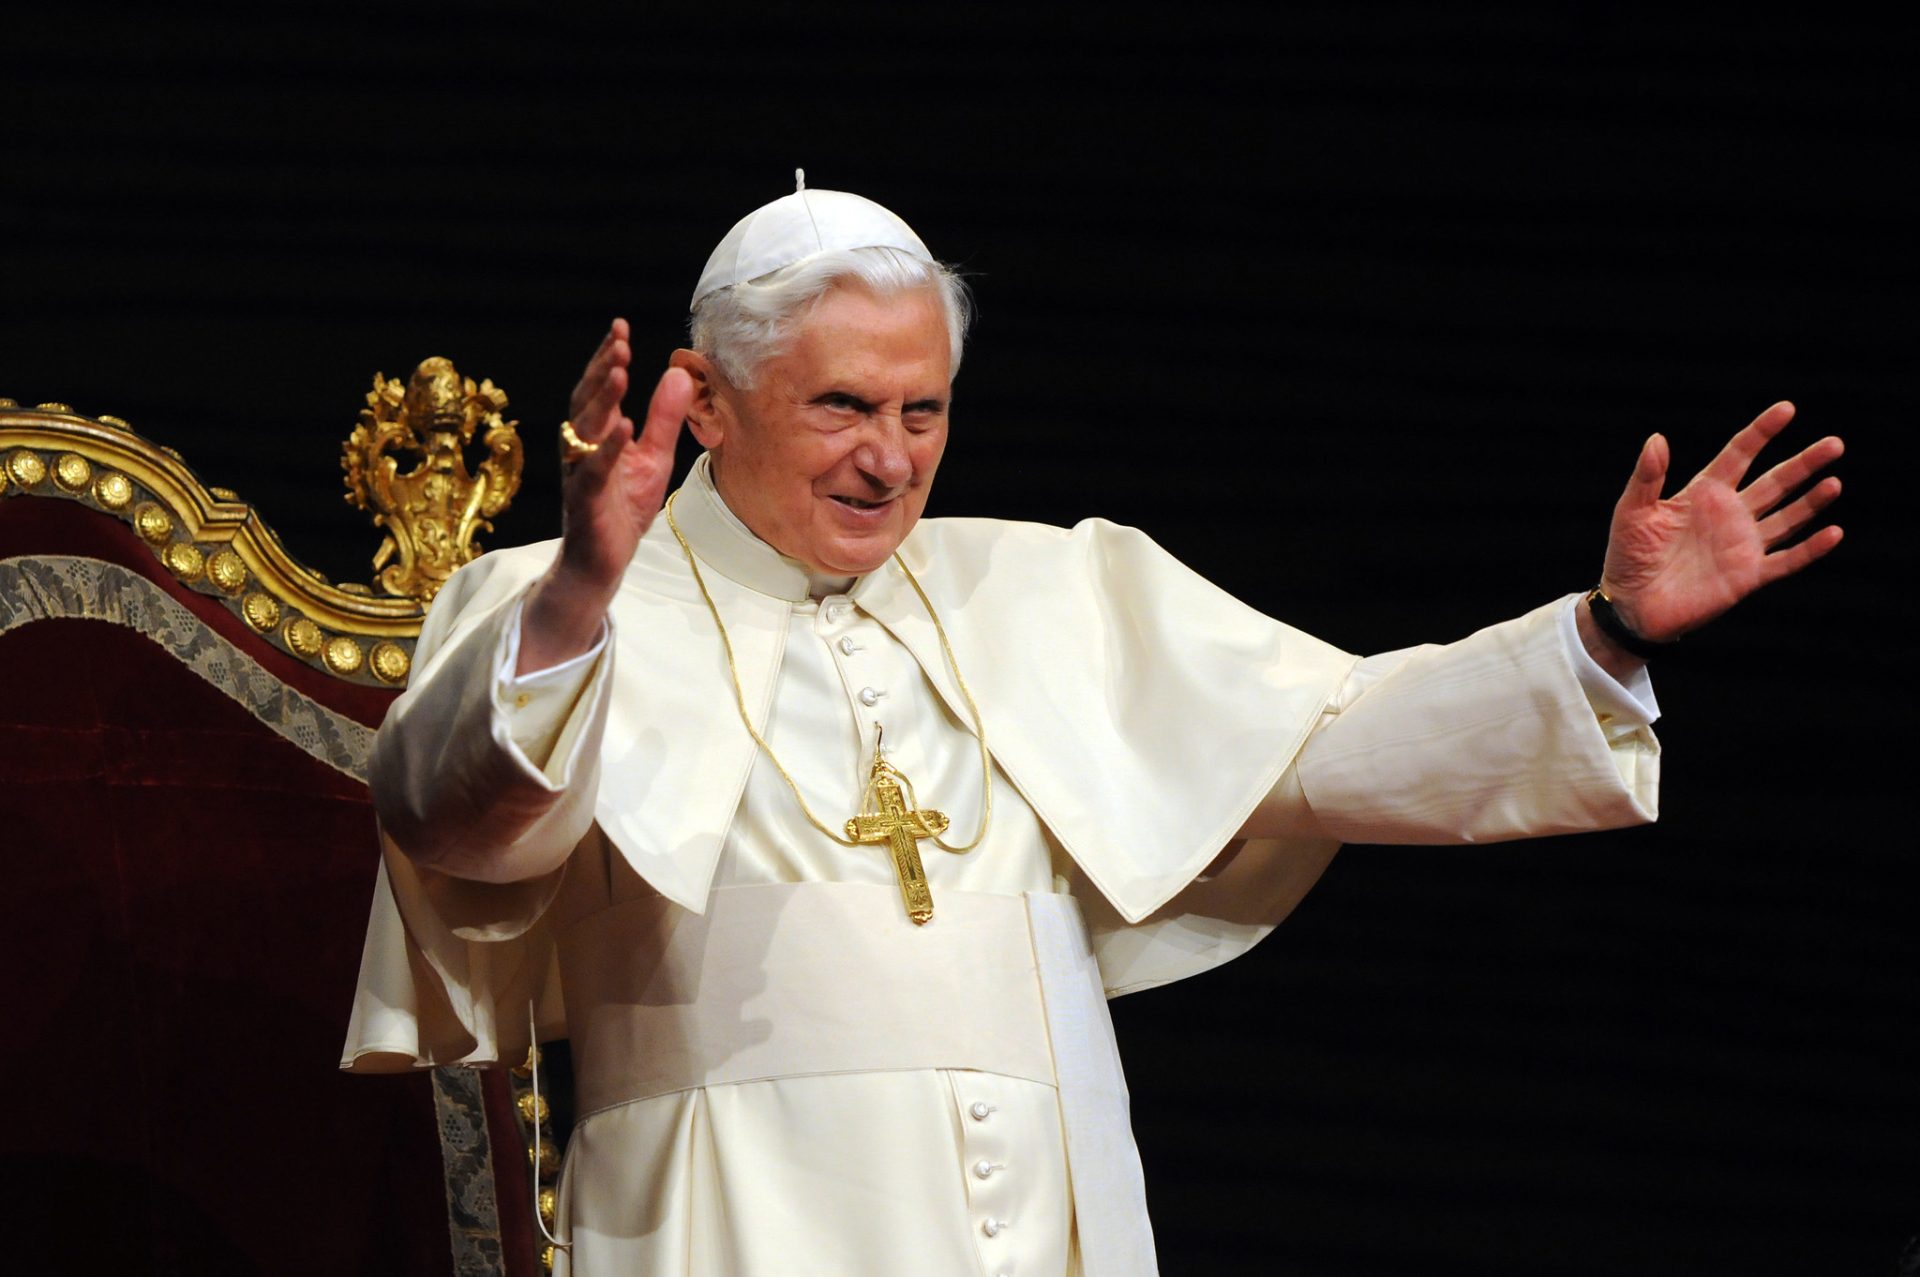 Pope Benedict XVI raising his arms in prayer